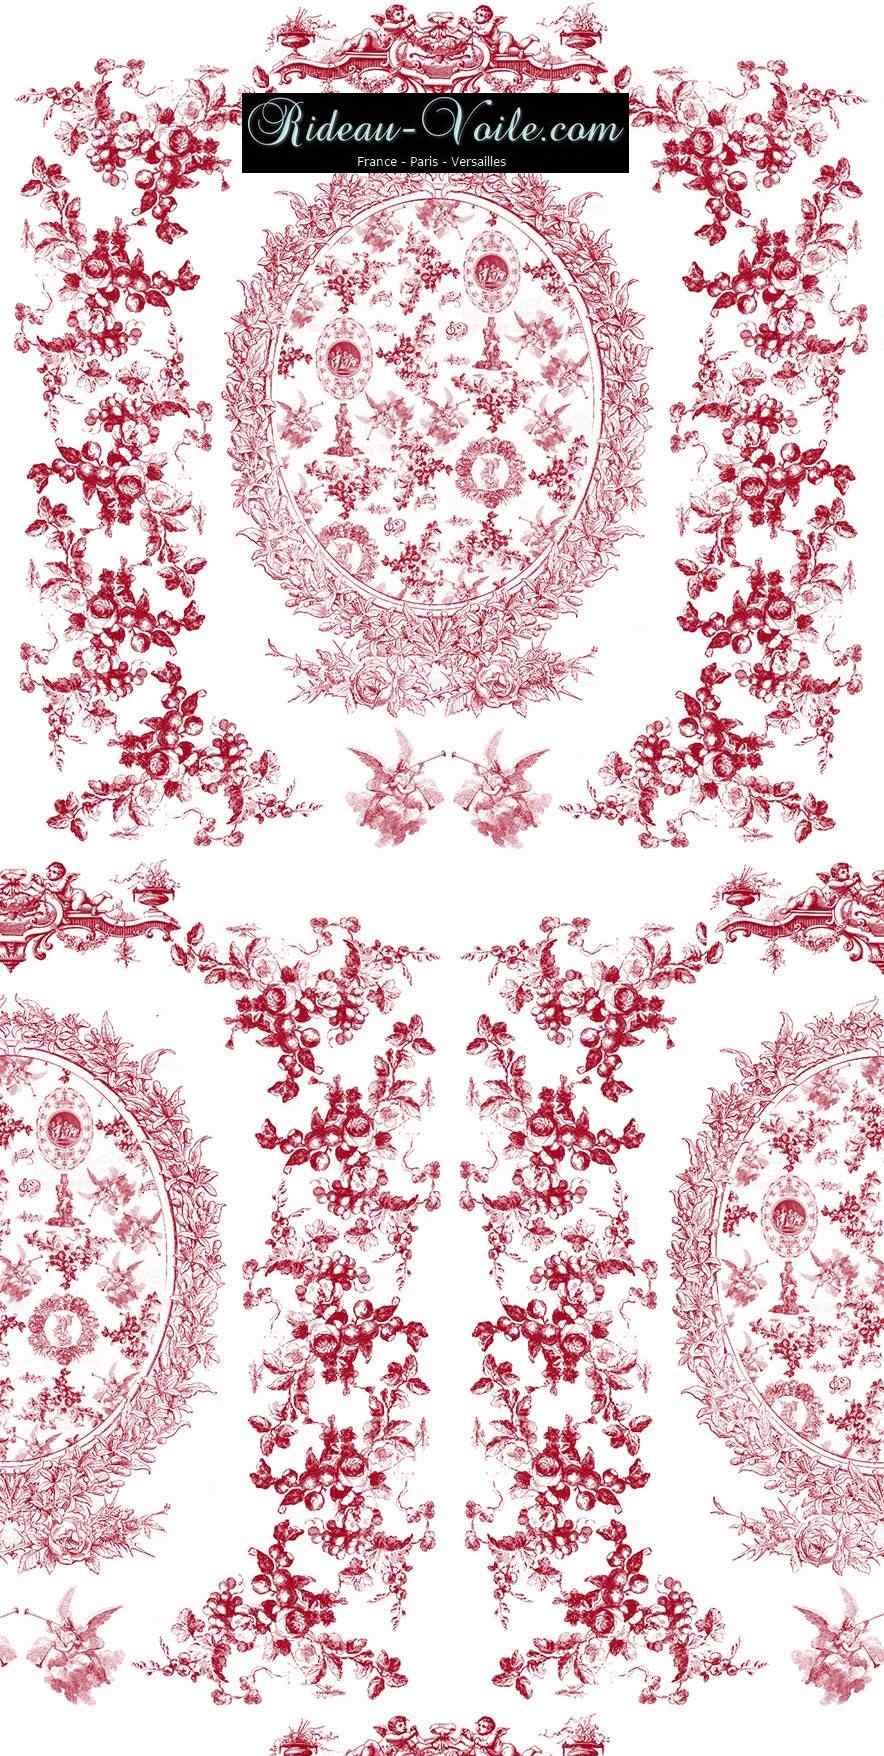 toile de jouy au mètre tissu Toile ameublement tapisserie textile agencement Paris Versailles haut de gamme french fabric meter tapestry upholstery home pattern  style Empire Yvelines motif imprimé rouge